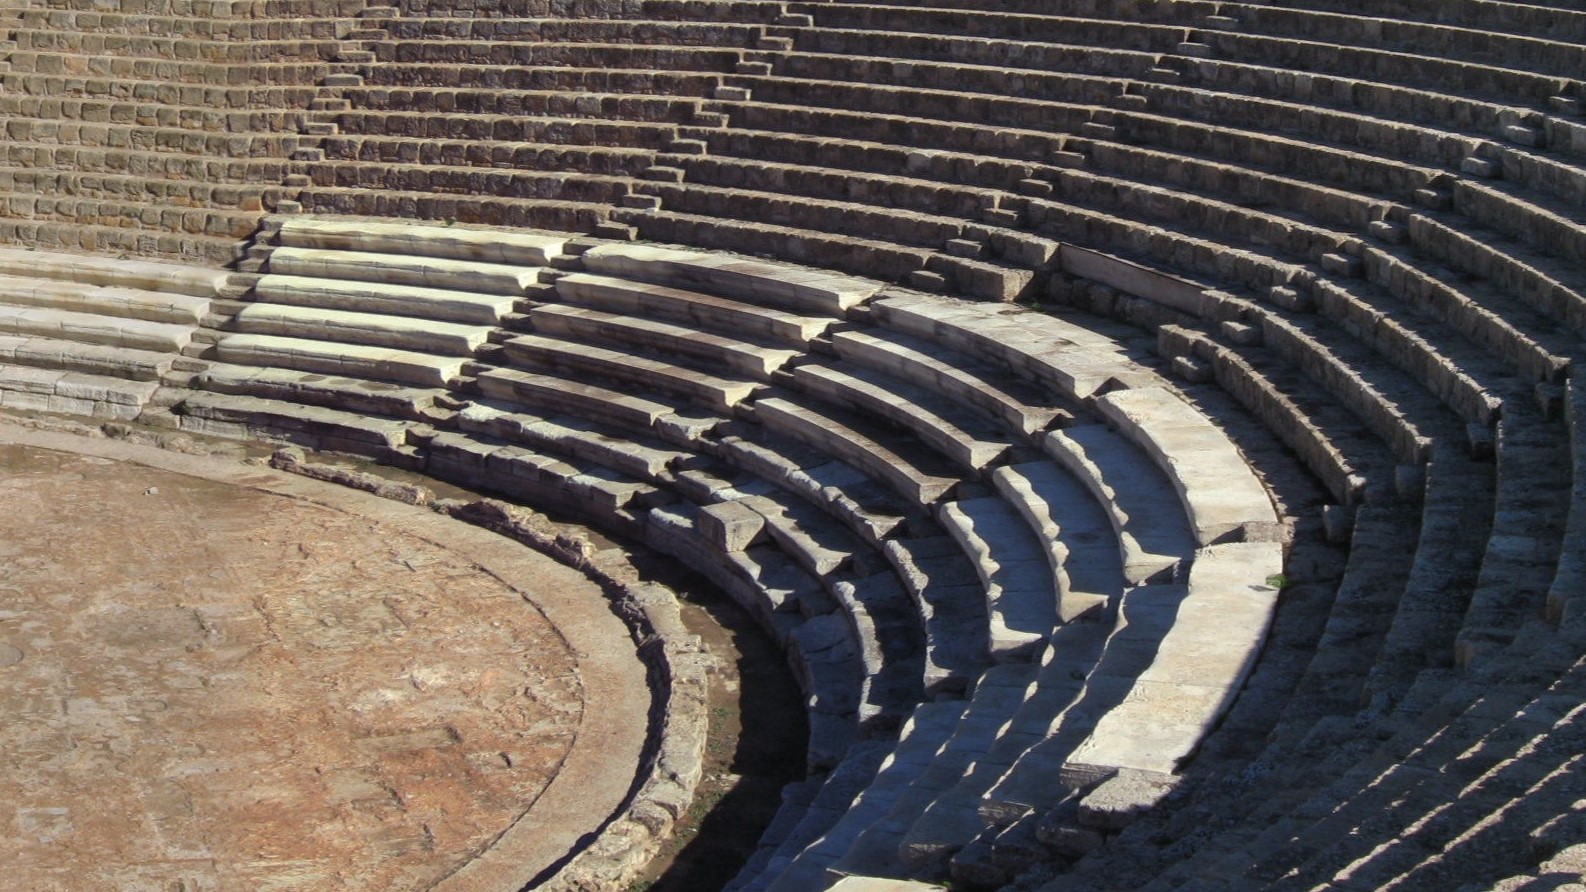 SalamisTheater